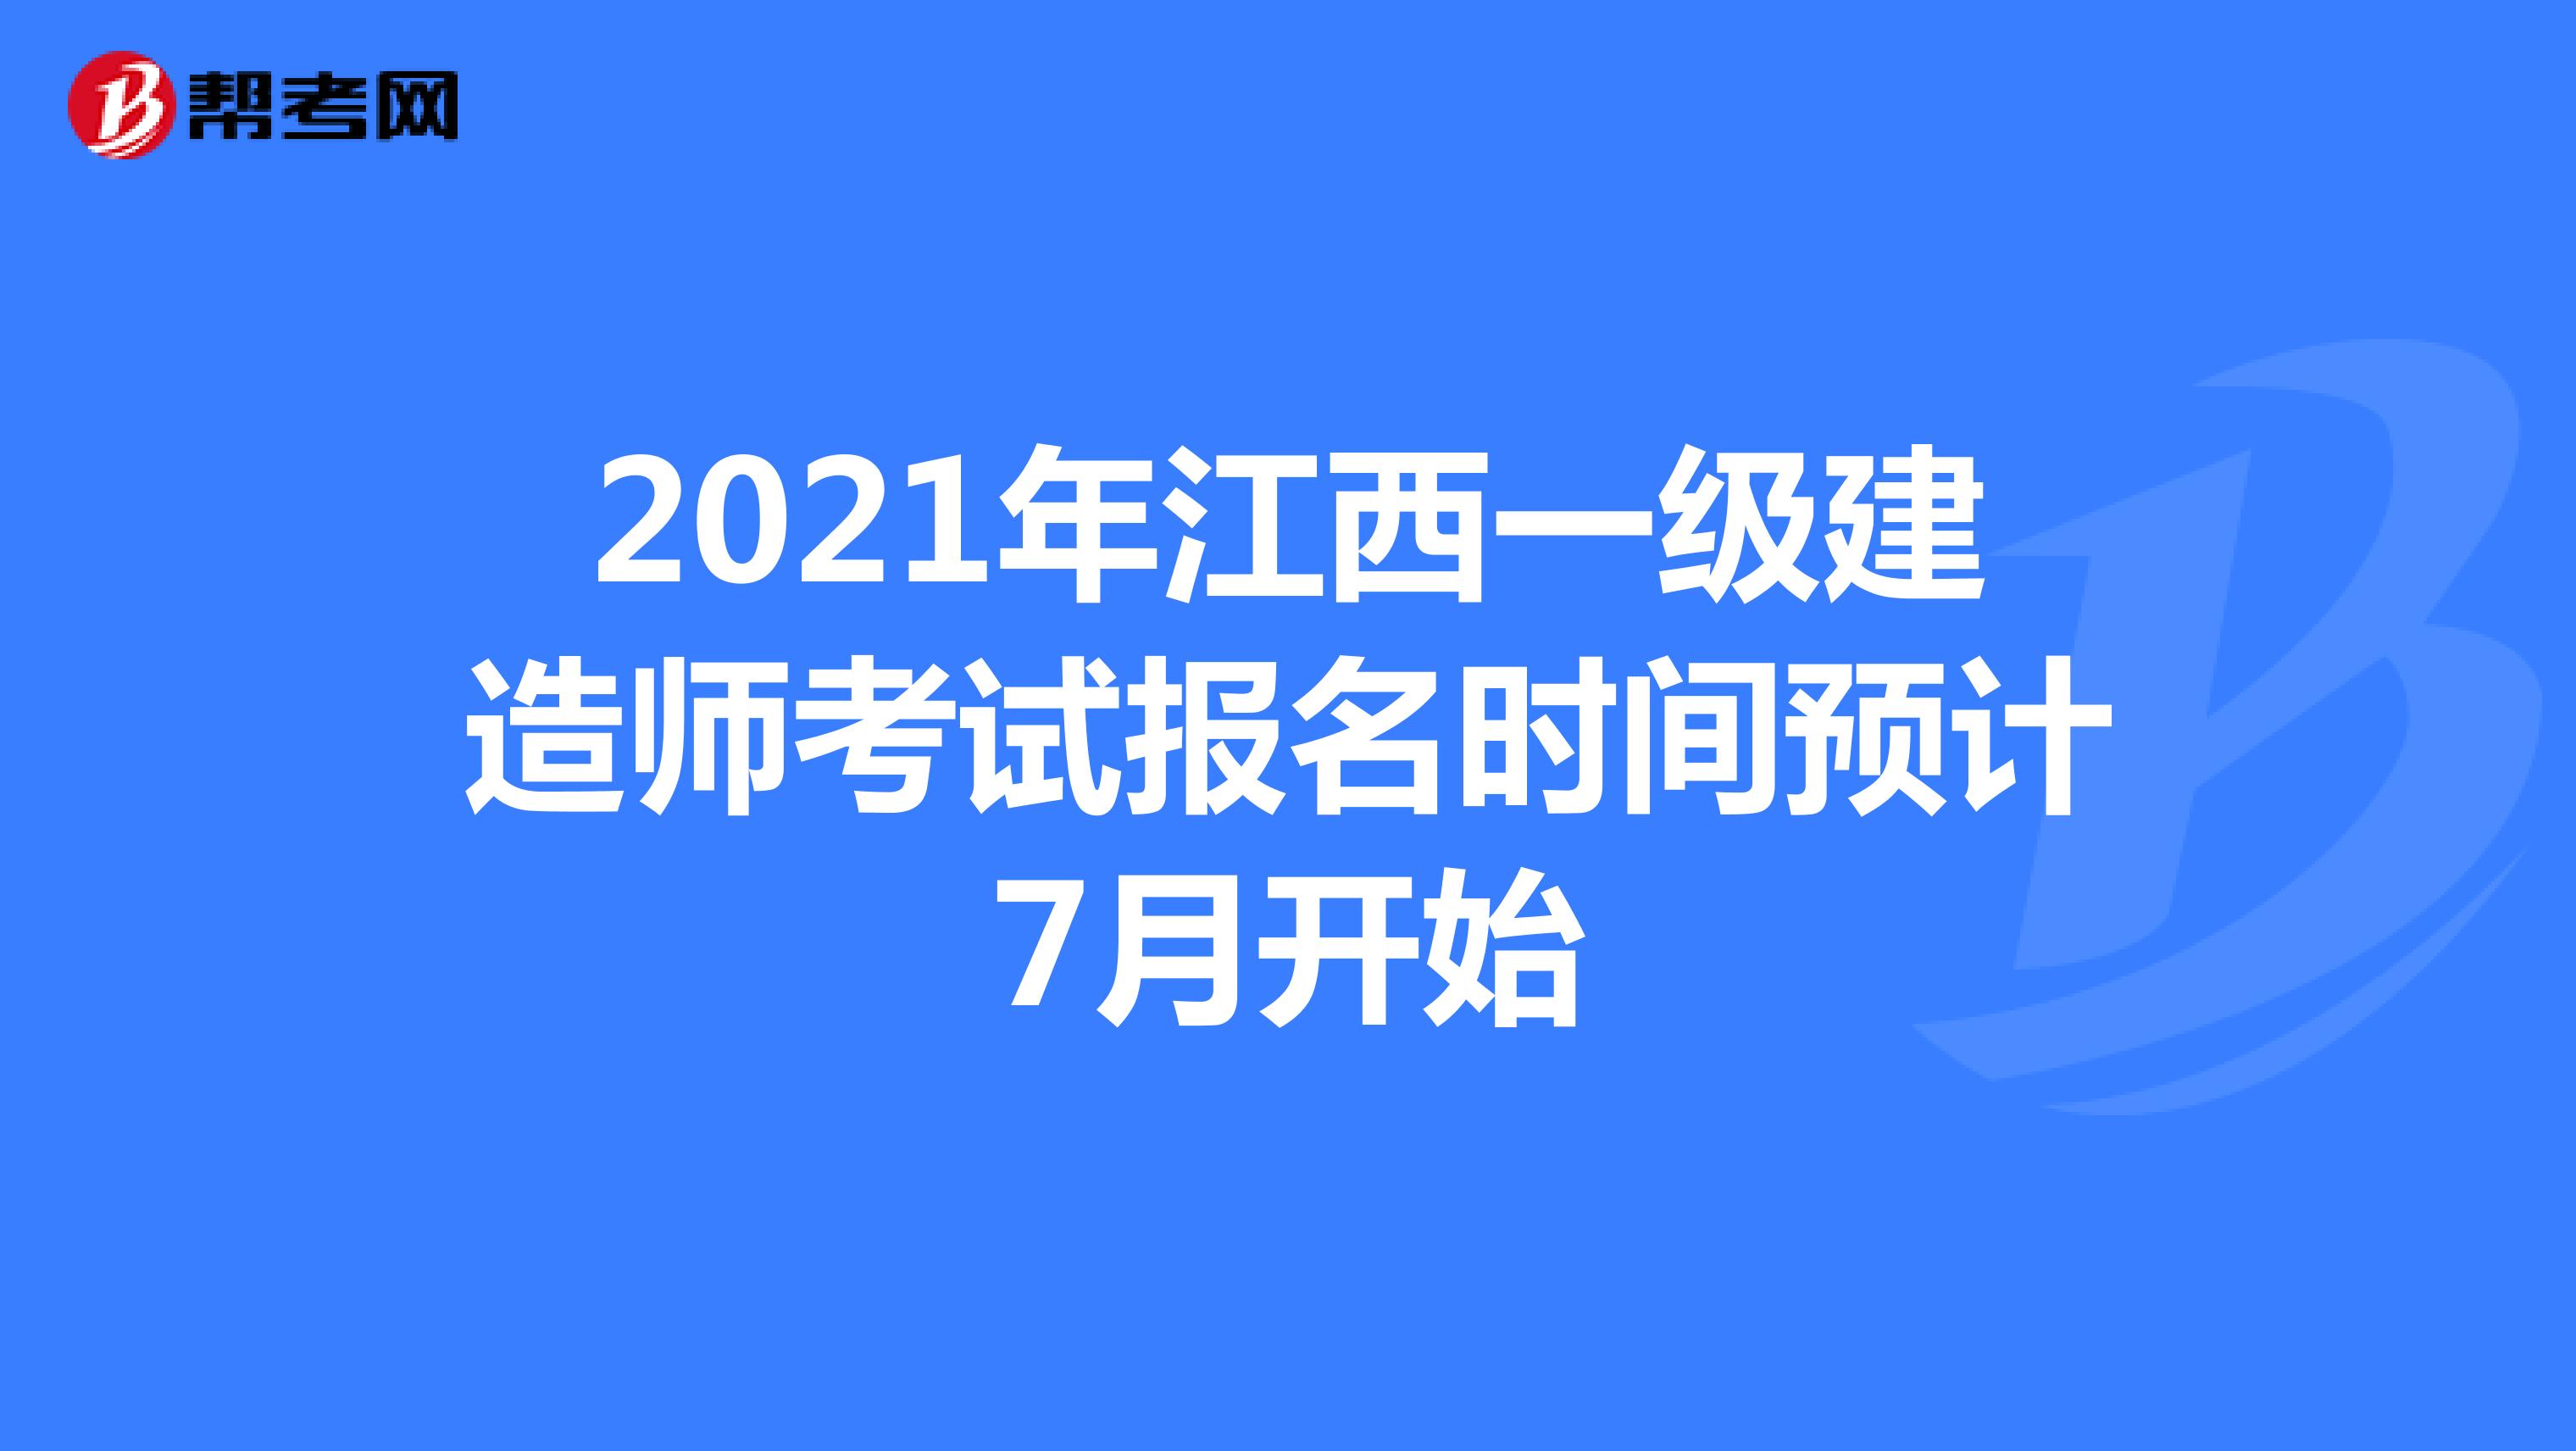 2021年江西一级建造师考试报名时间预计7月开始